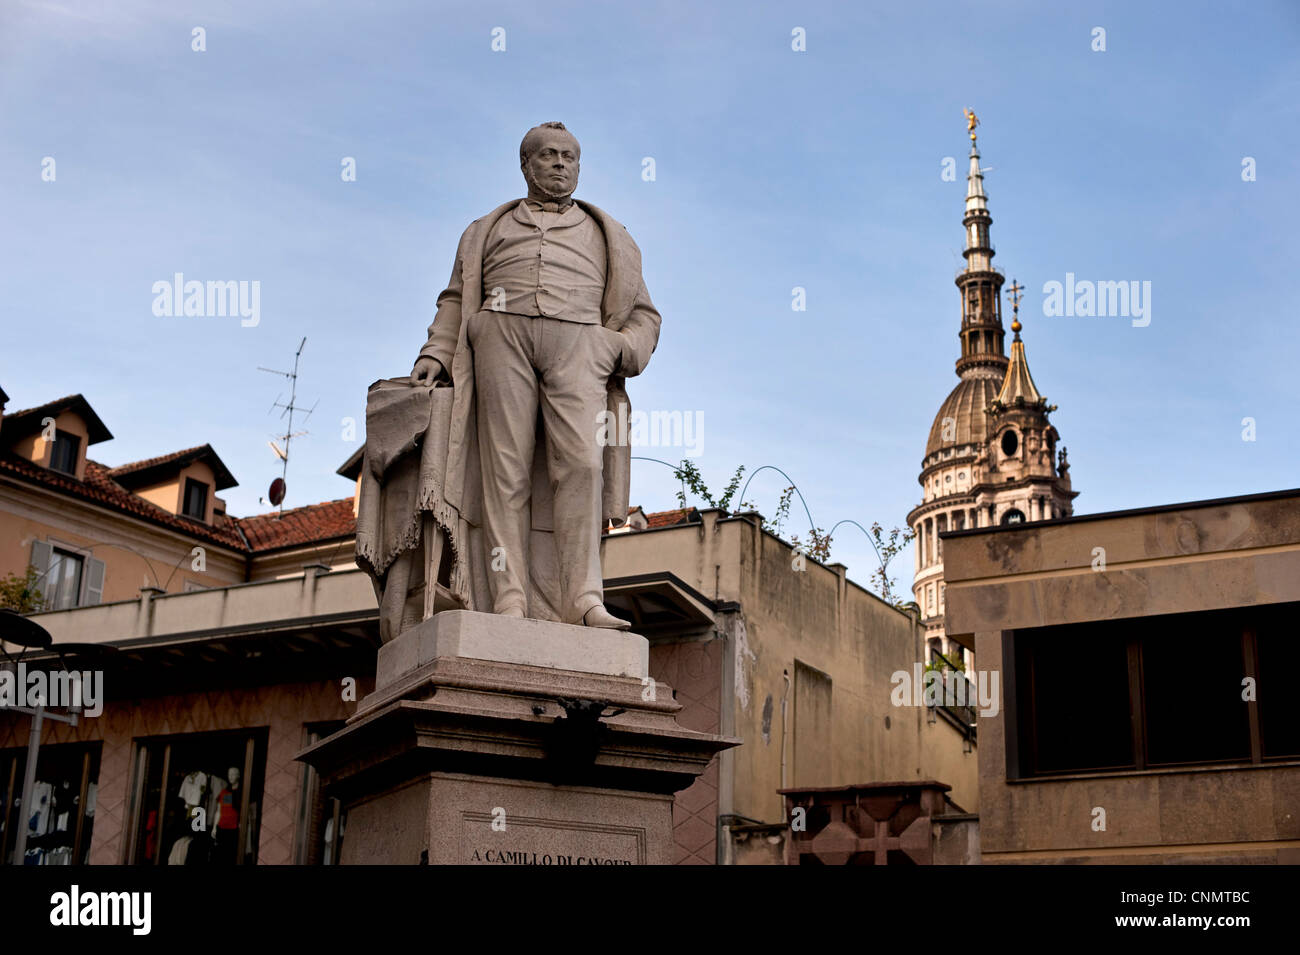 statue of camillo di cavour in novara, piedmont, italy Stock Photo